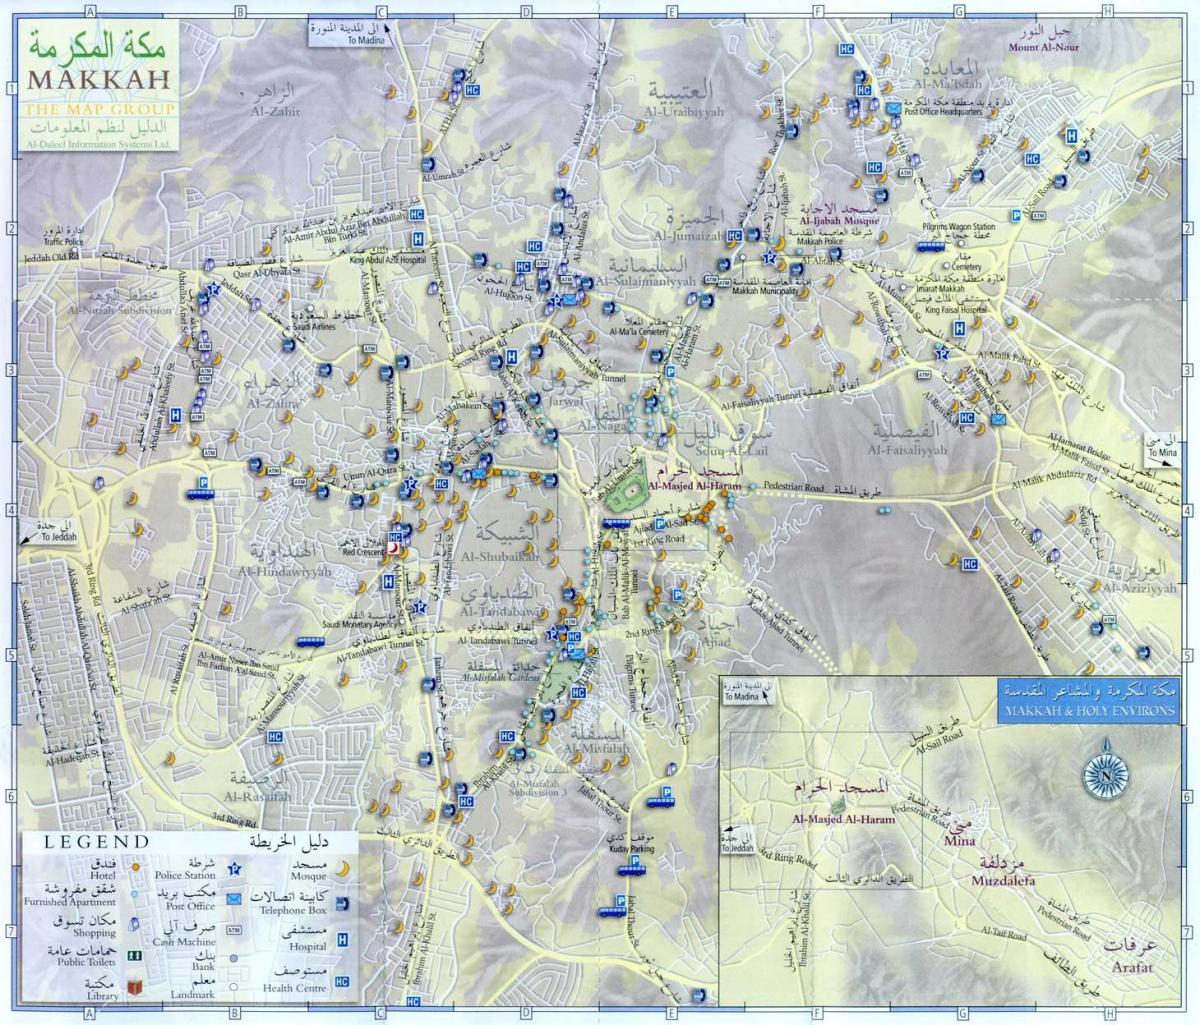  kart over Mekka ziyarat steder